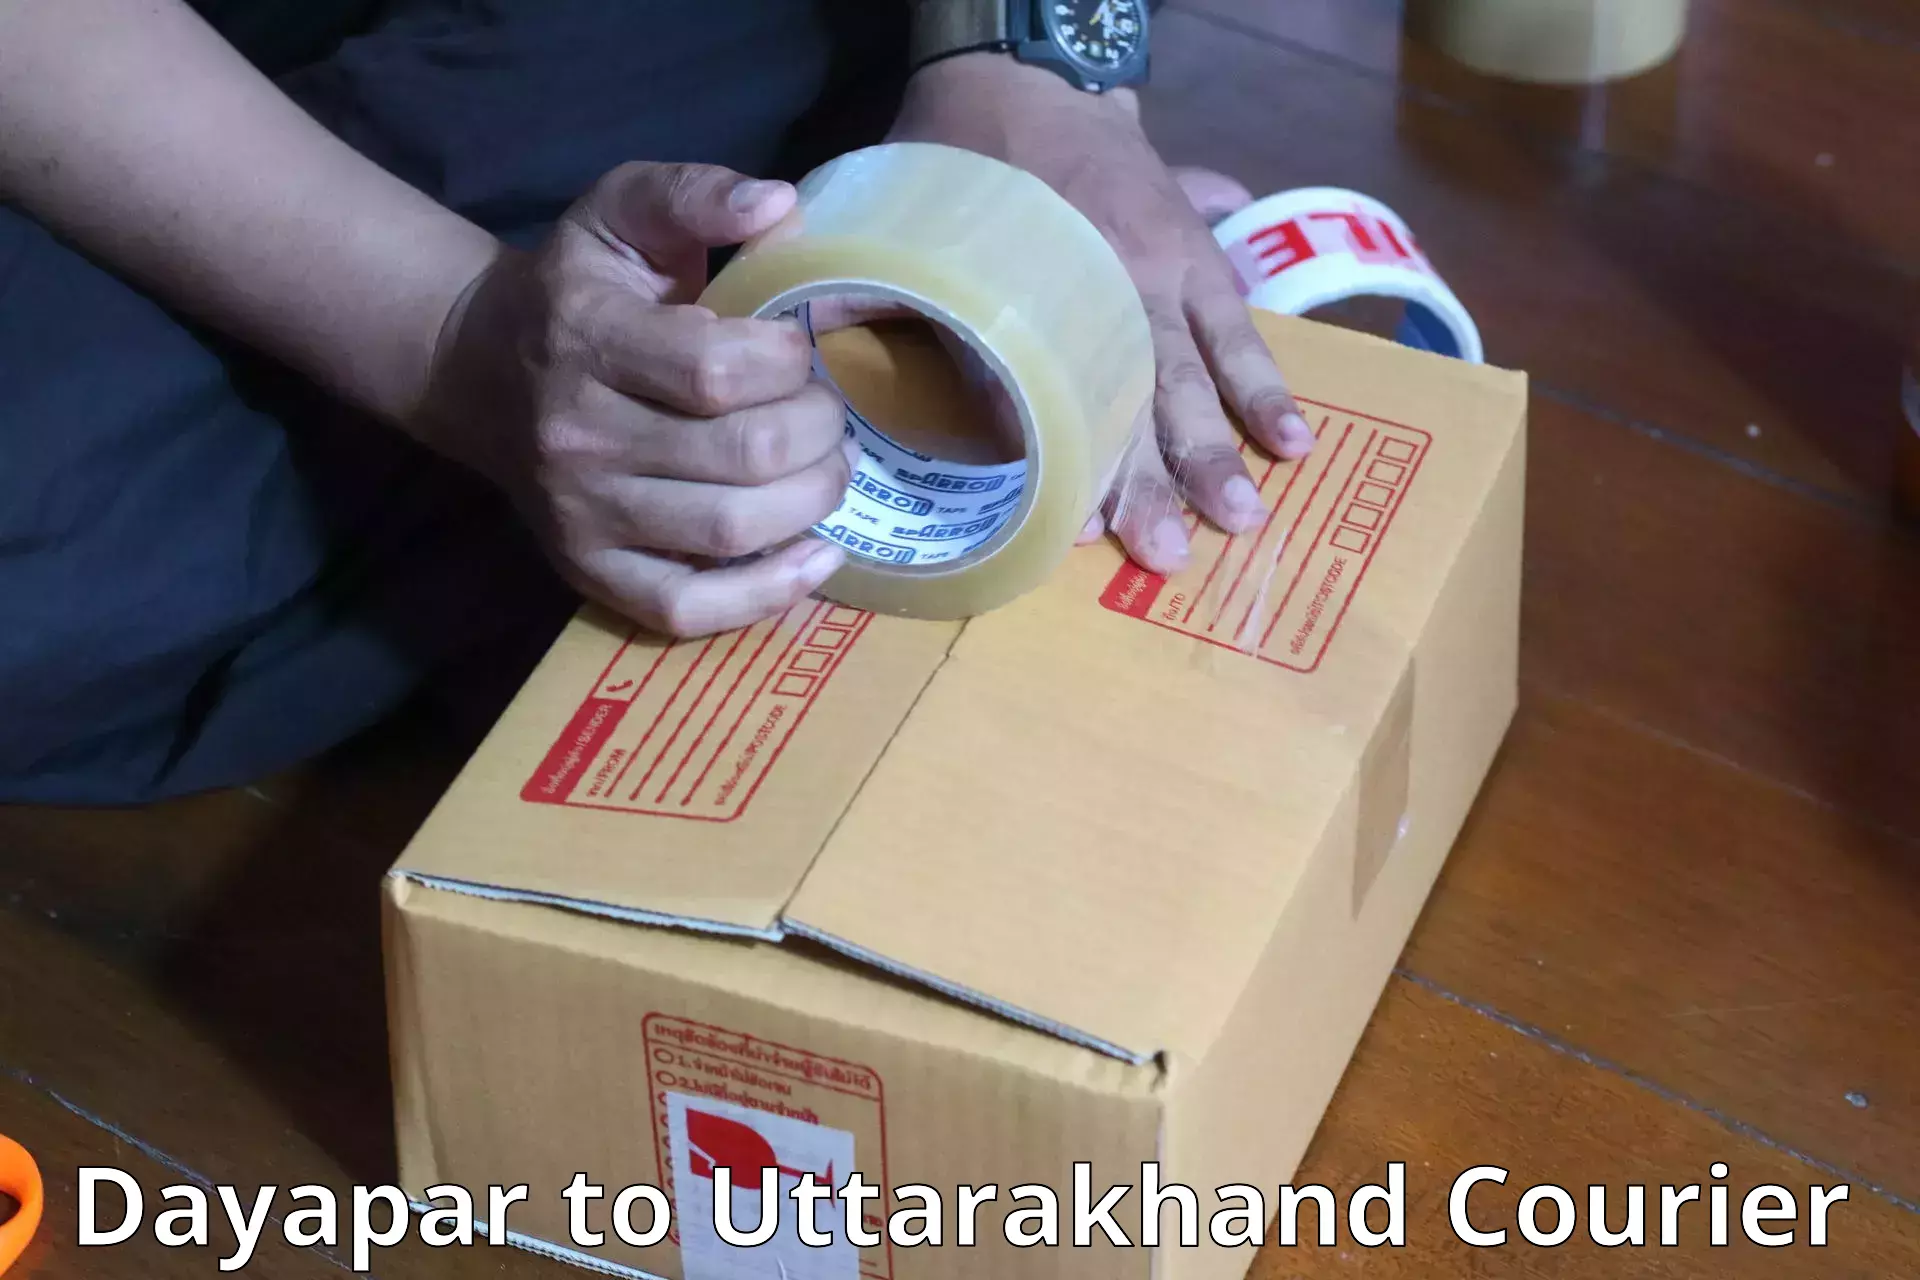 Luggage delivery network Dayapar to Uttarakhand